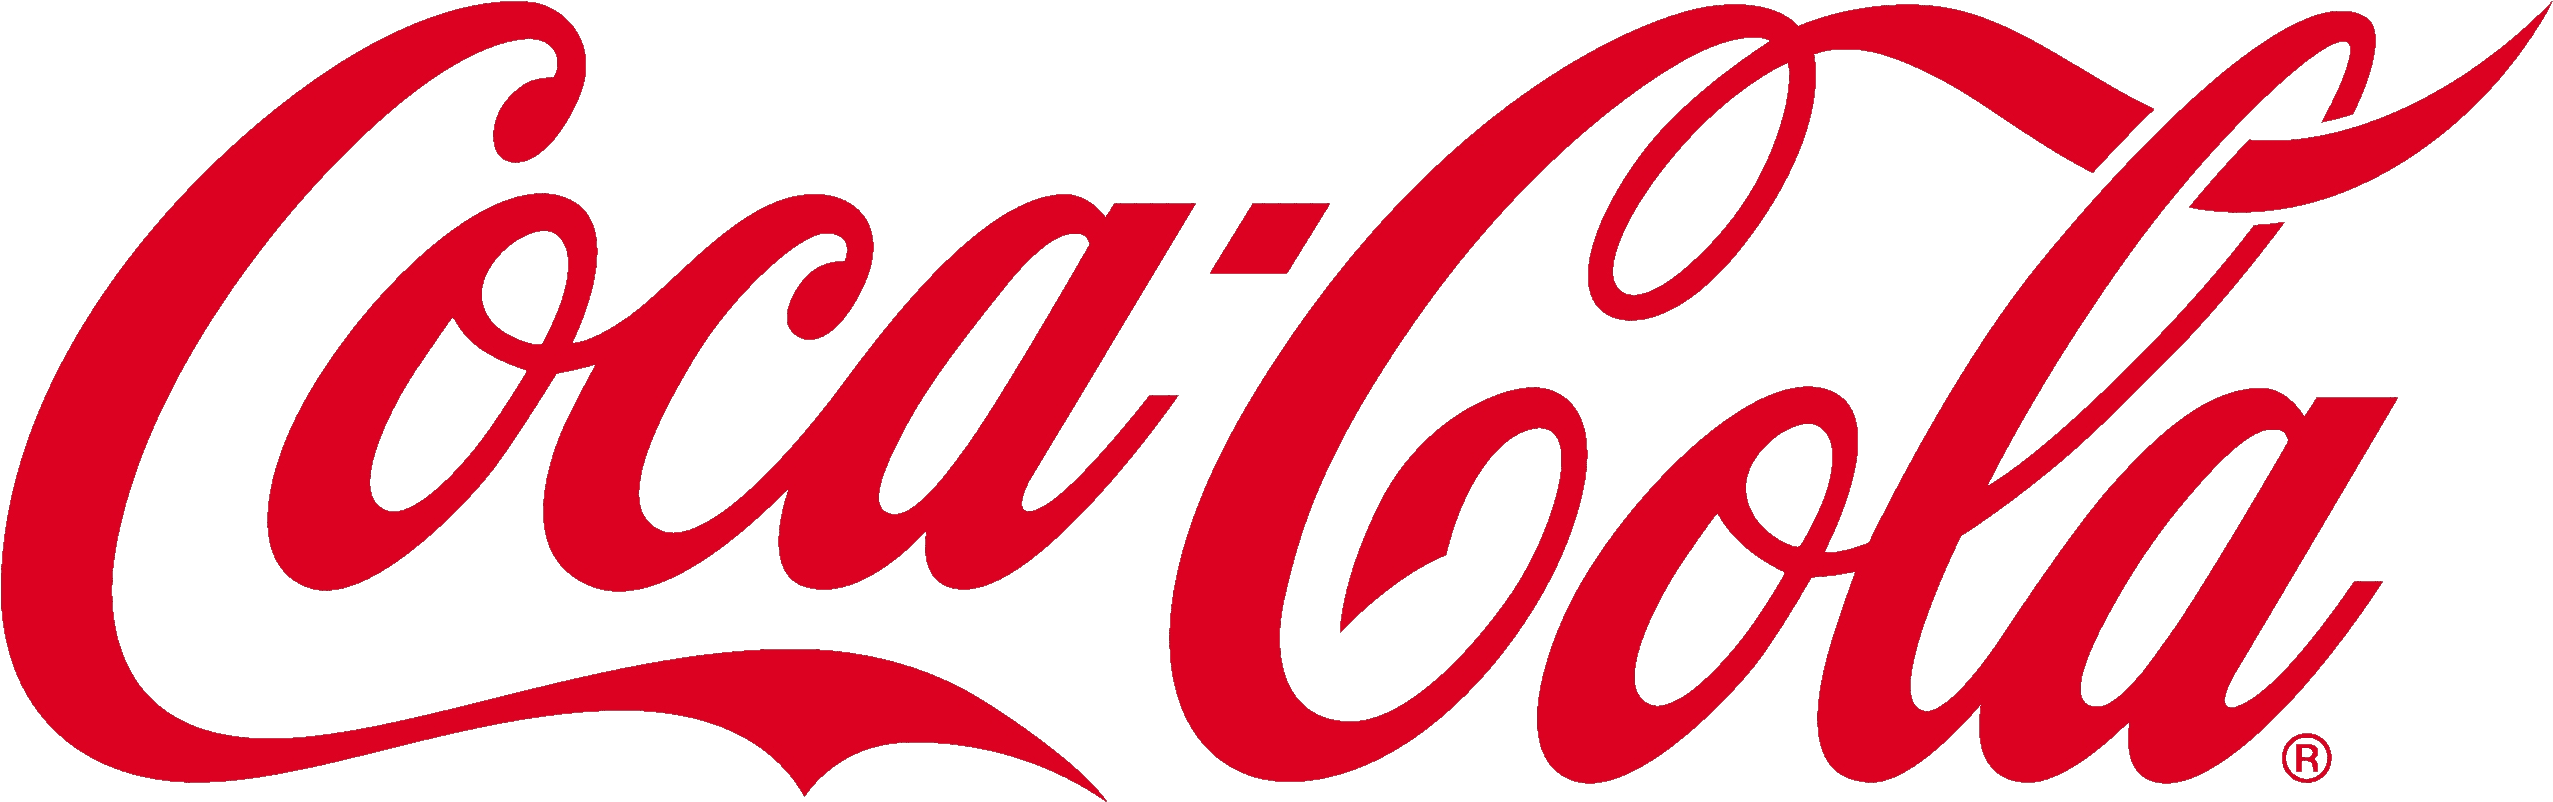 coca_cola_logo_PNG1